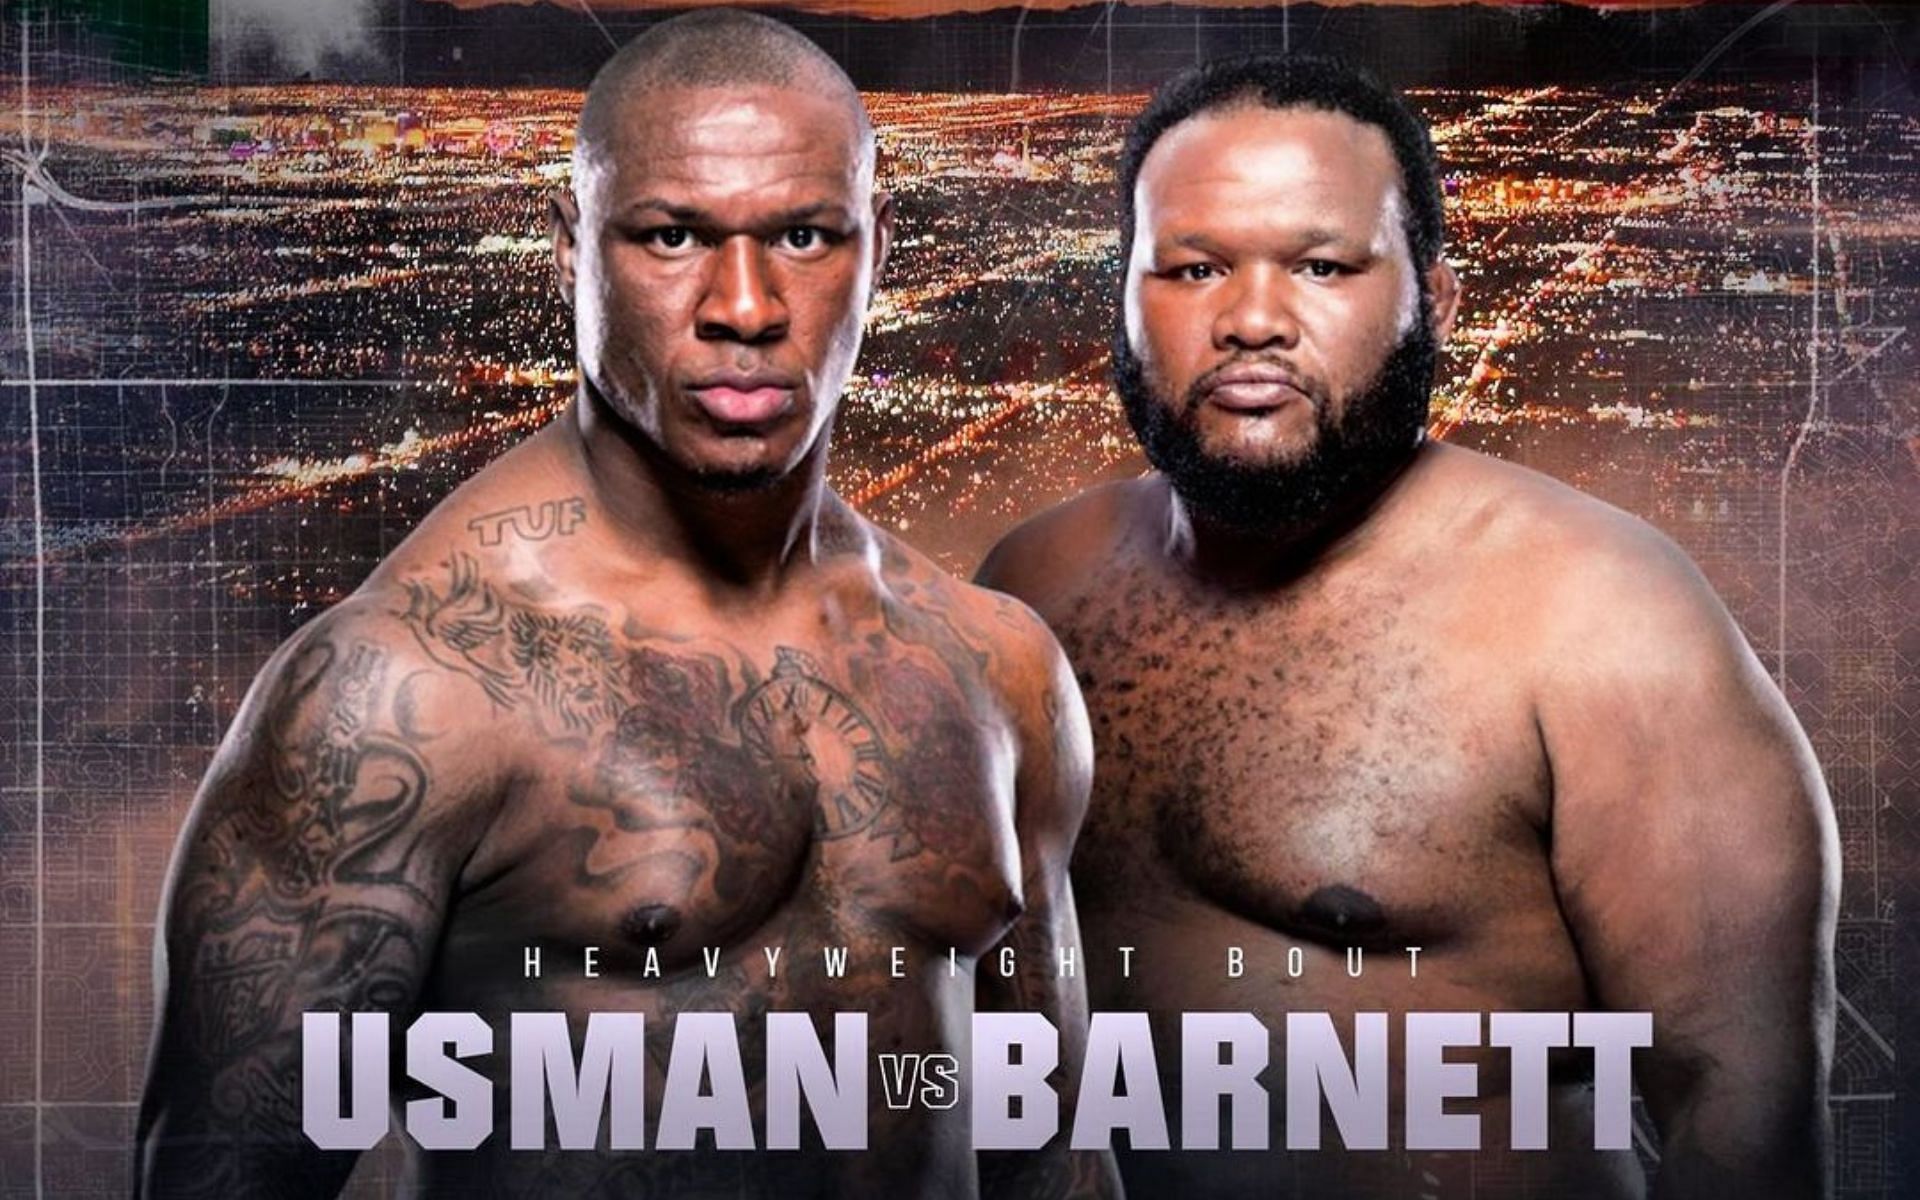 Mohammed Usman vs. Chris Barnett will take place at UFC Vegas 88